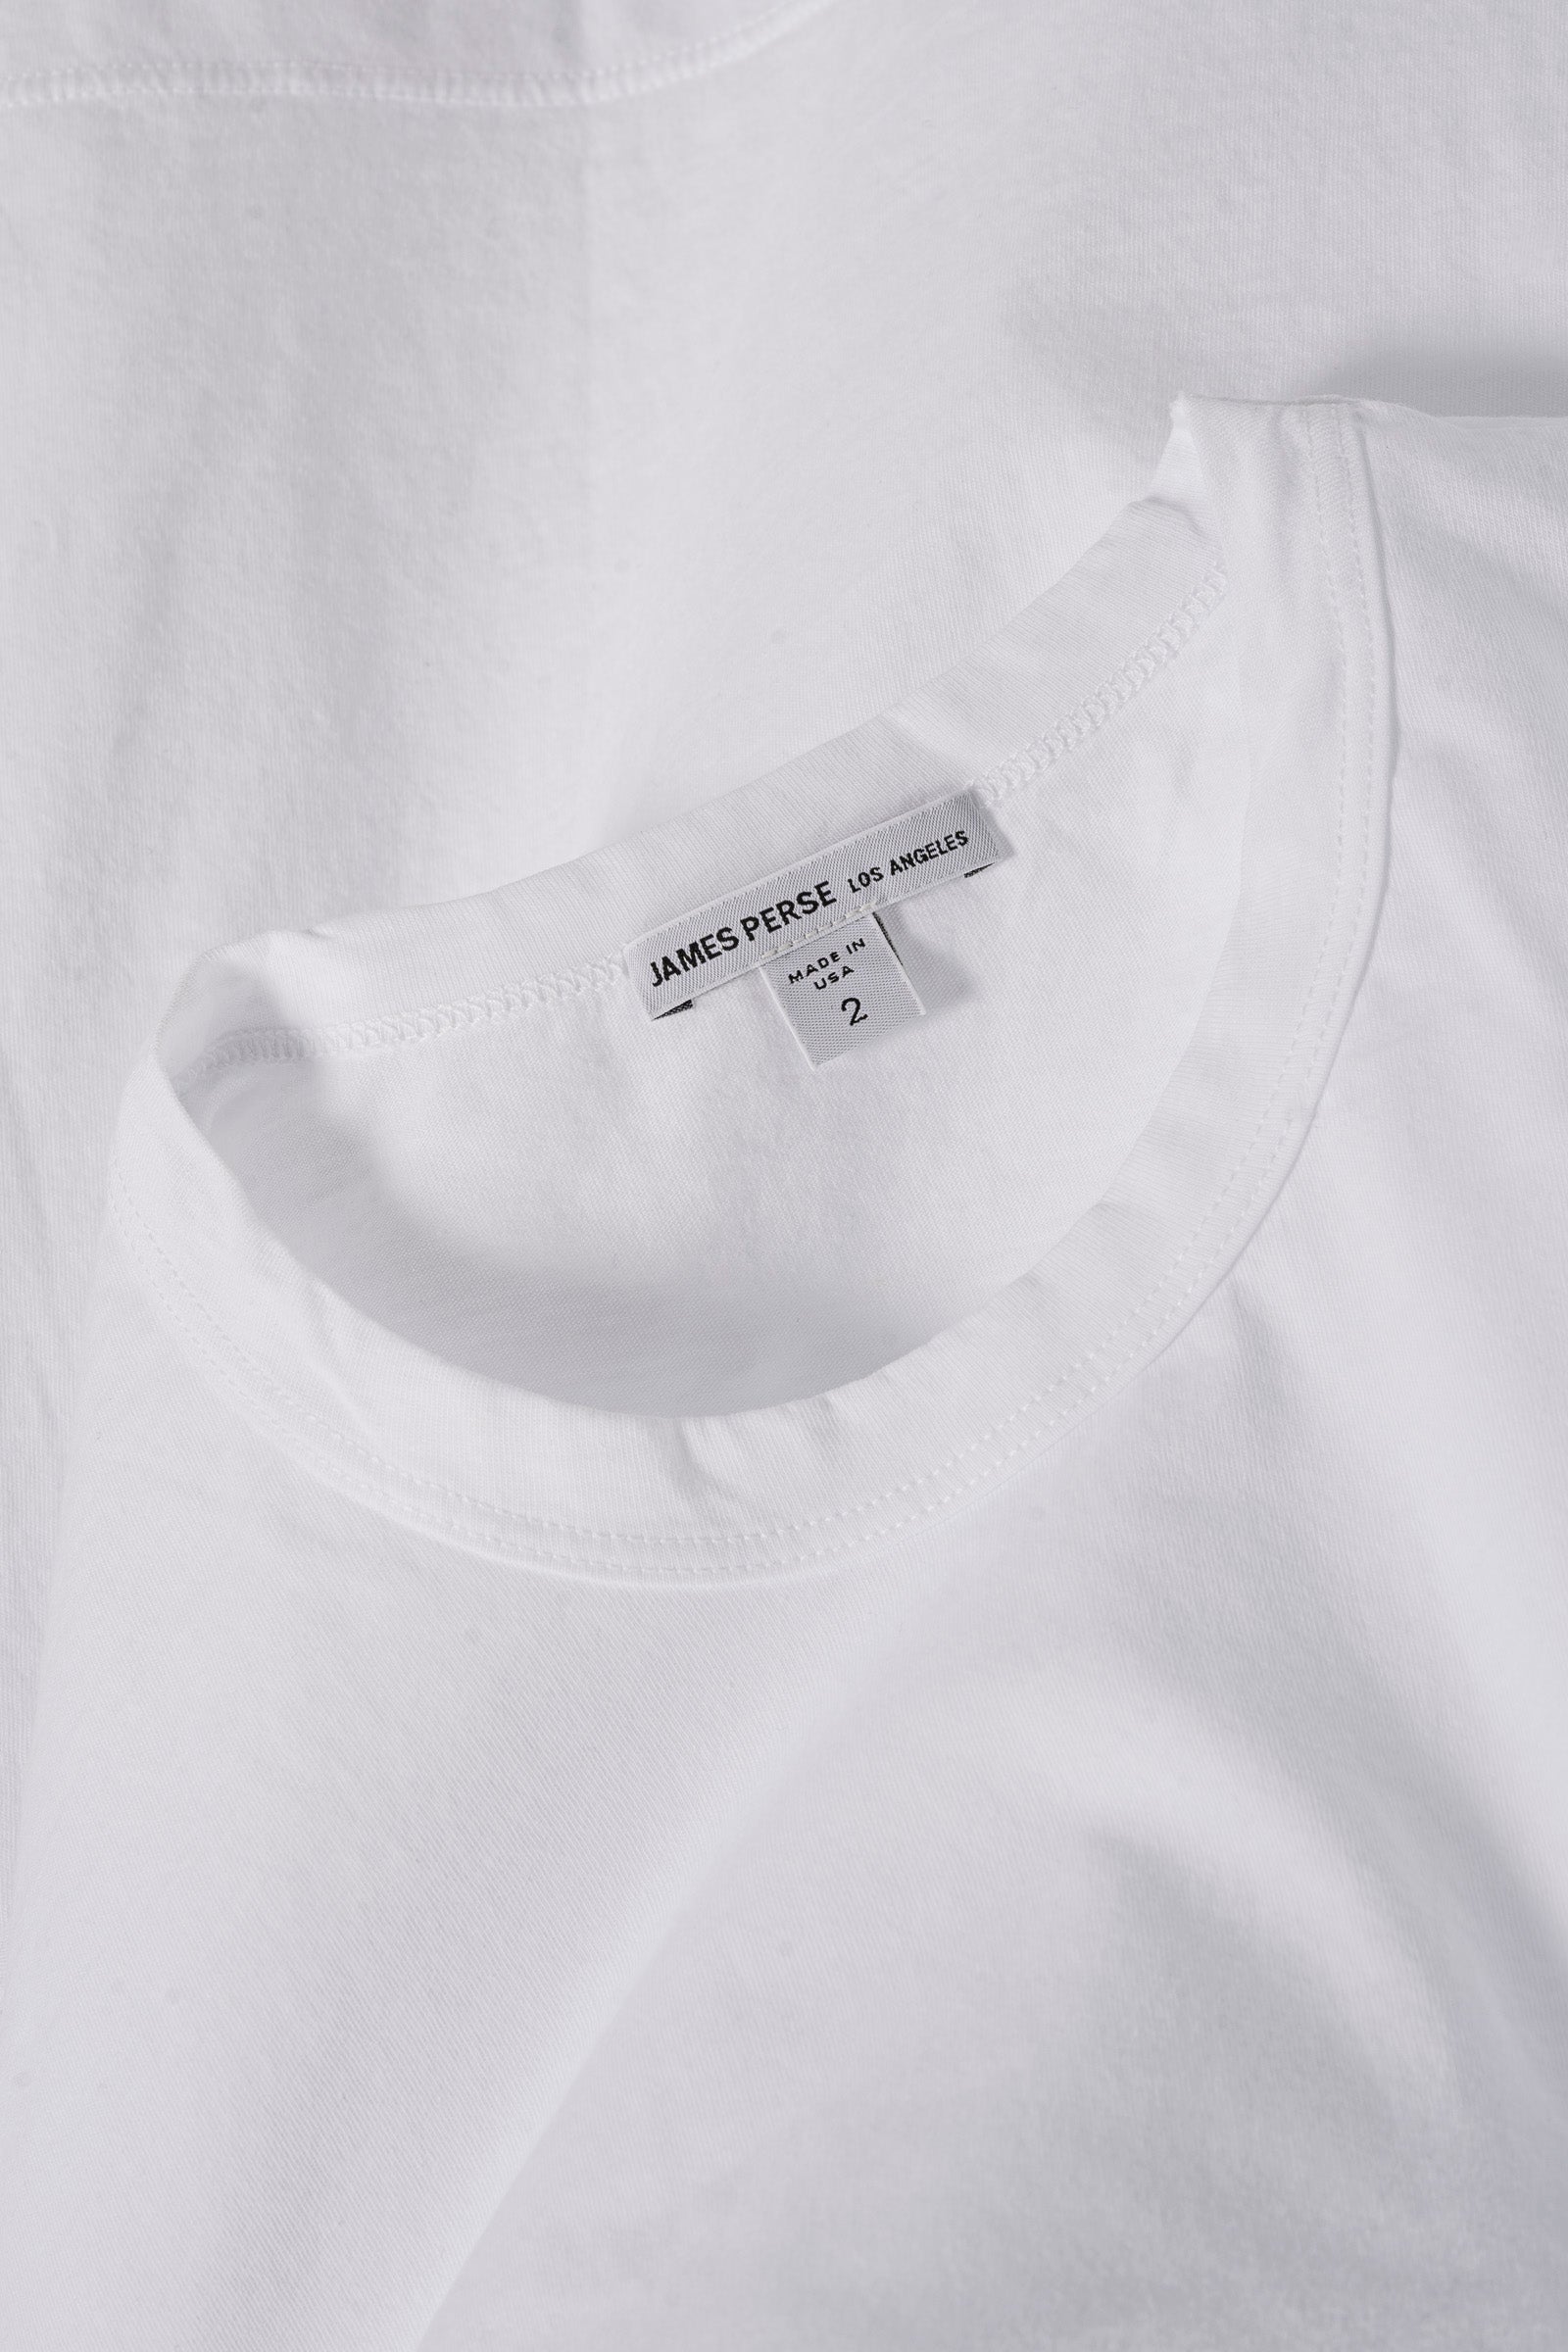 S/S Crew T-Shirt White